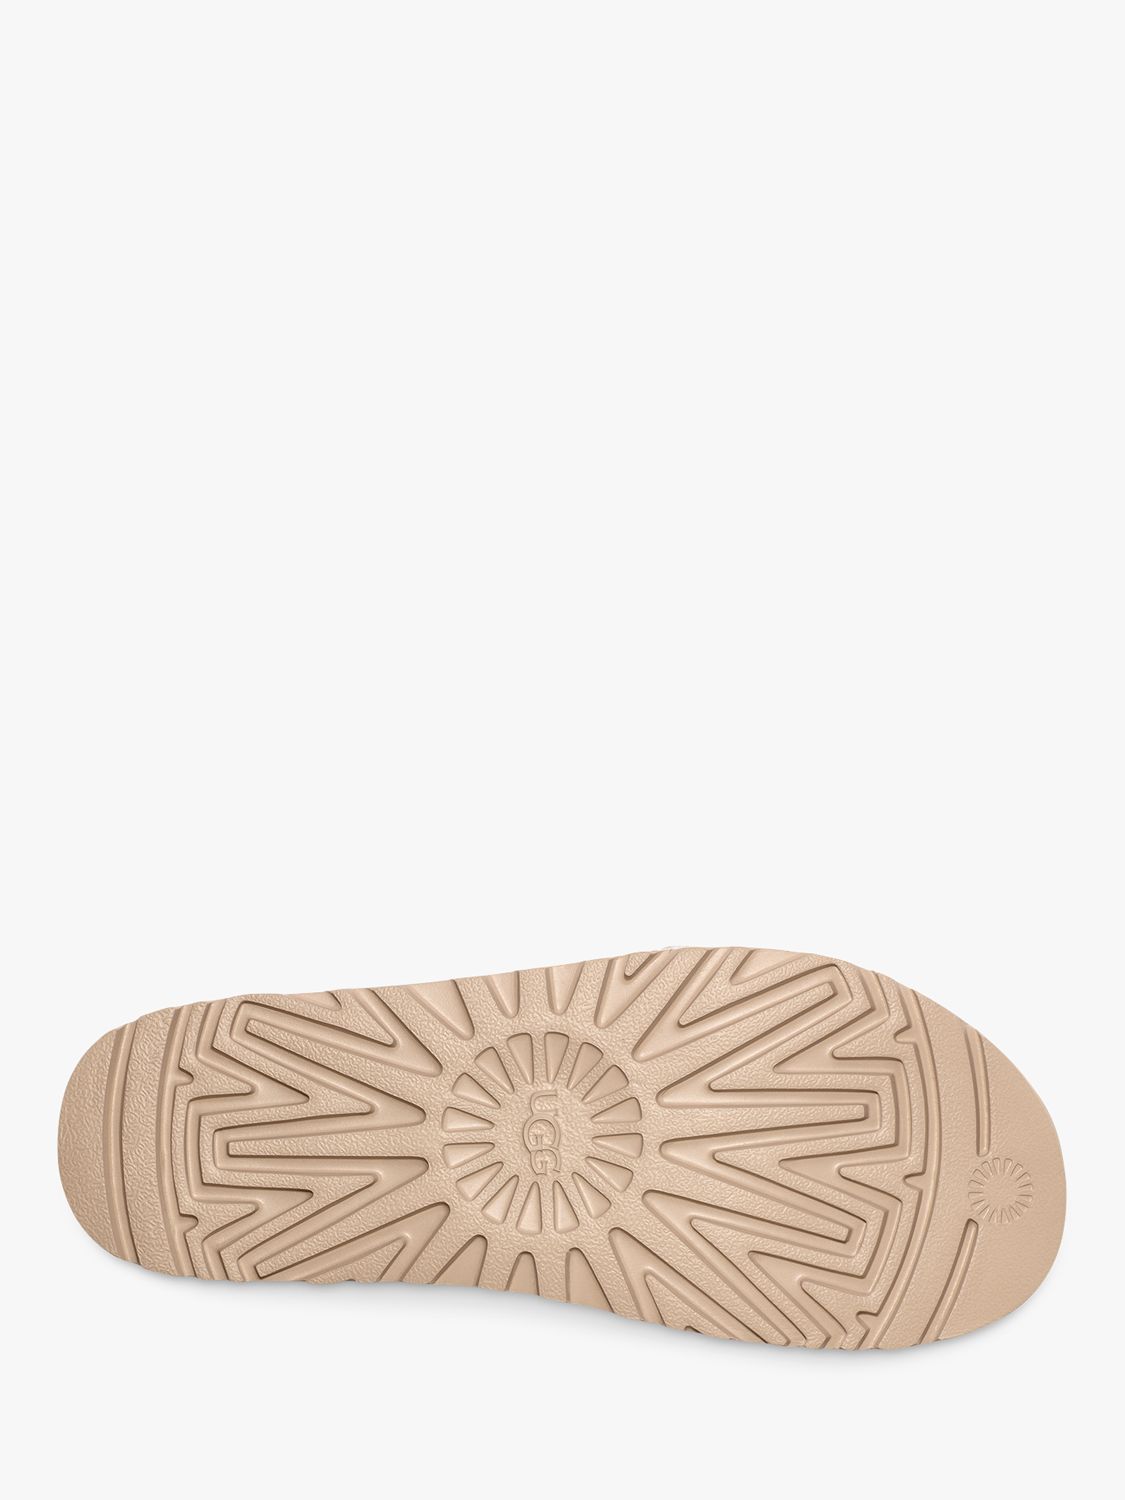 UGG Goldenstar Leather Flatform Sandals, Jasmine, 3